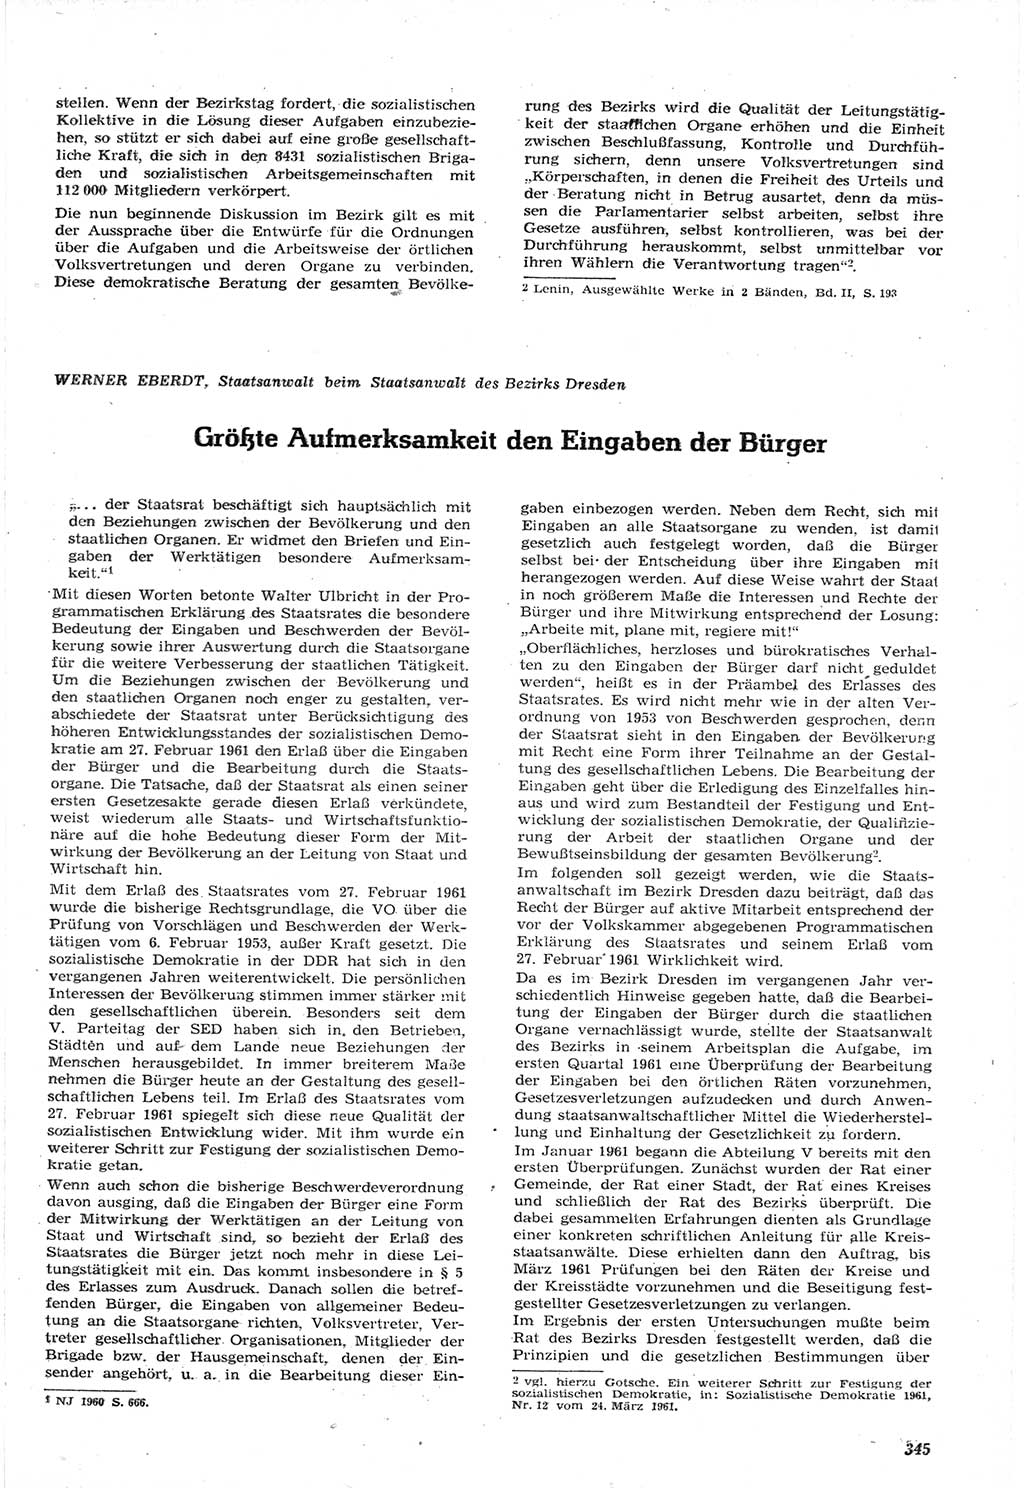 Neue Justiz (NJ), Zeitschrift für Recht und Rechtswissenschaft [Deutsche Demokratische Republik (DDR)], 15. Jahrgang 1961, Seite 345 (NJ DDR 1961, S. 345)